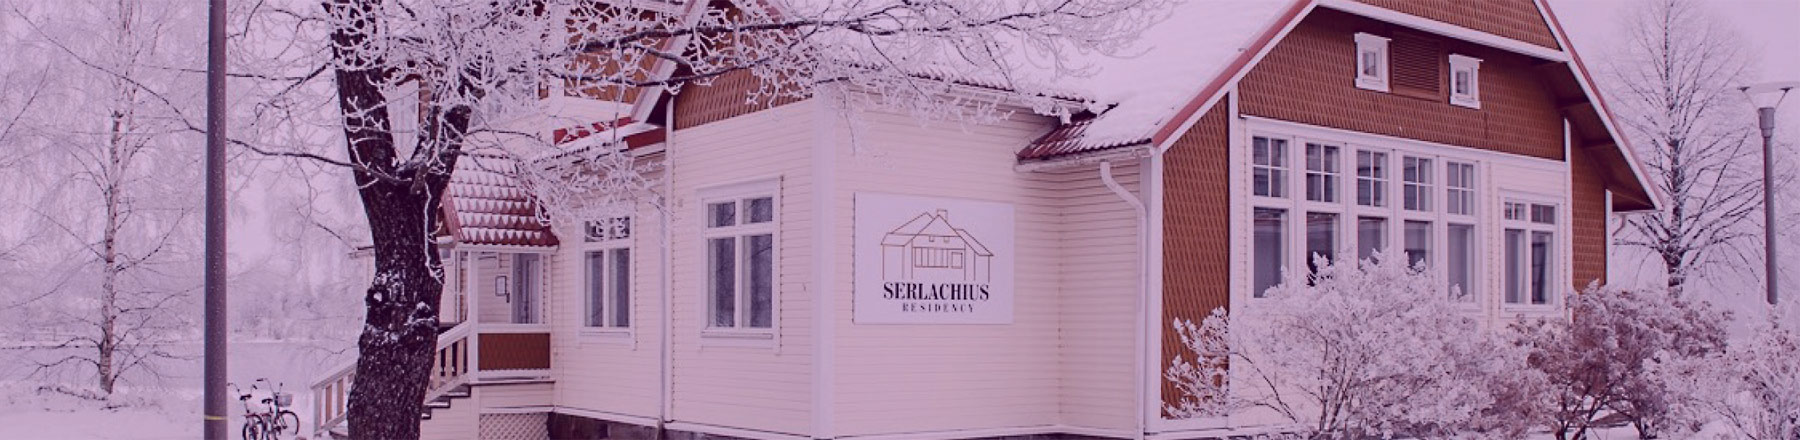 Serlachius Residency